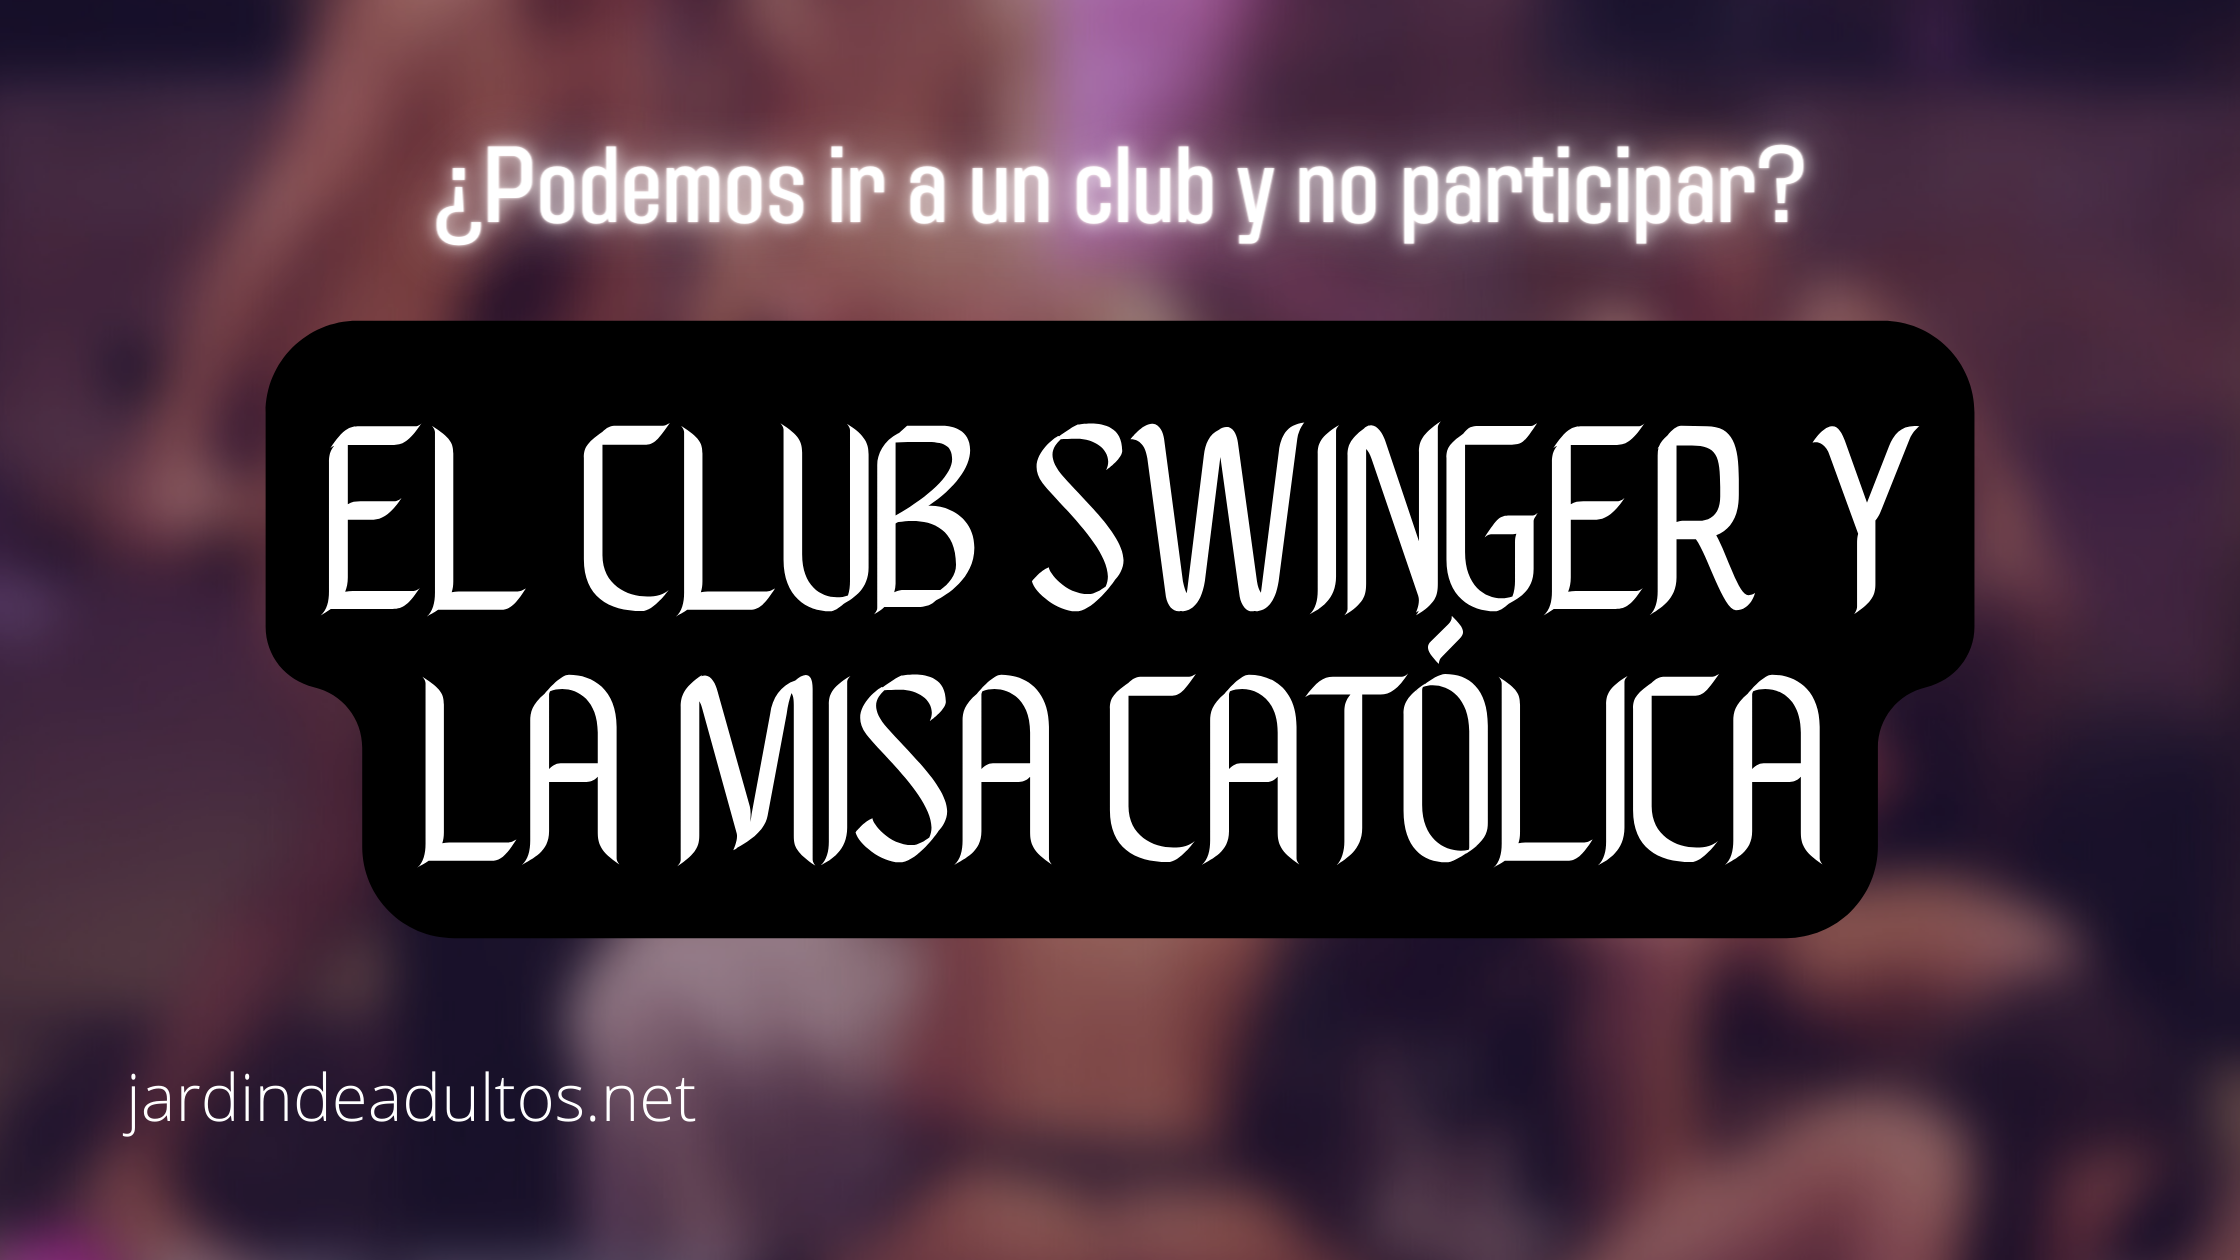 Podemos ir a un club swinger y no participar?